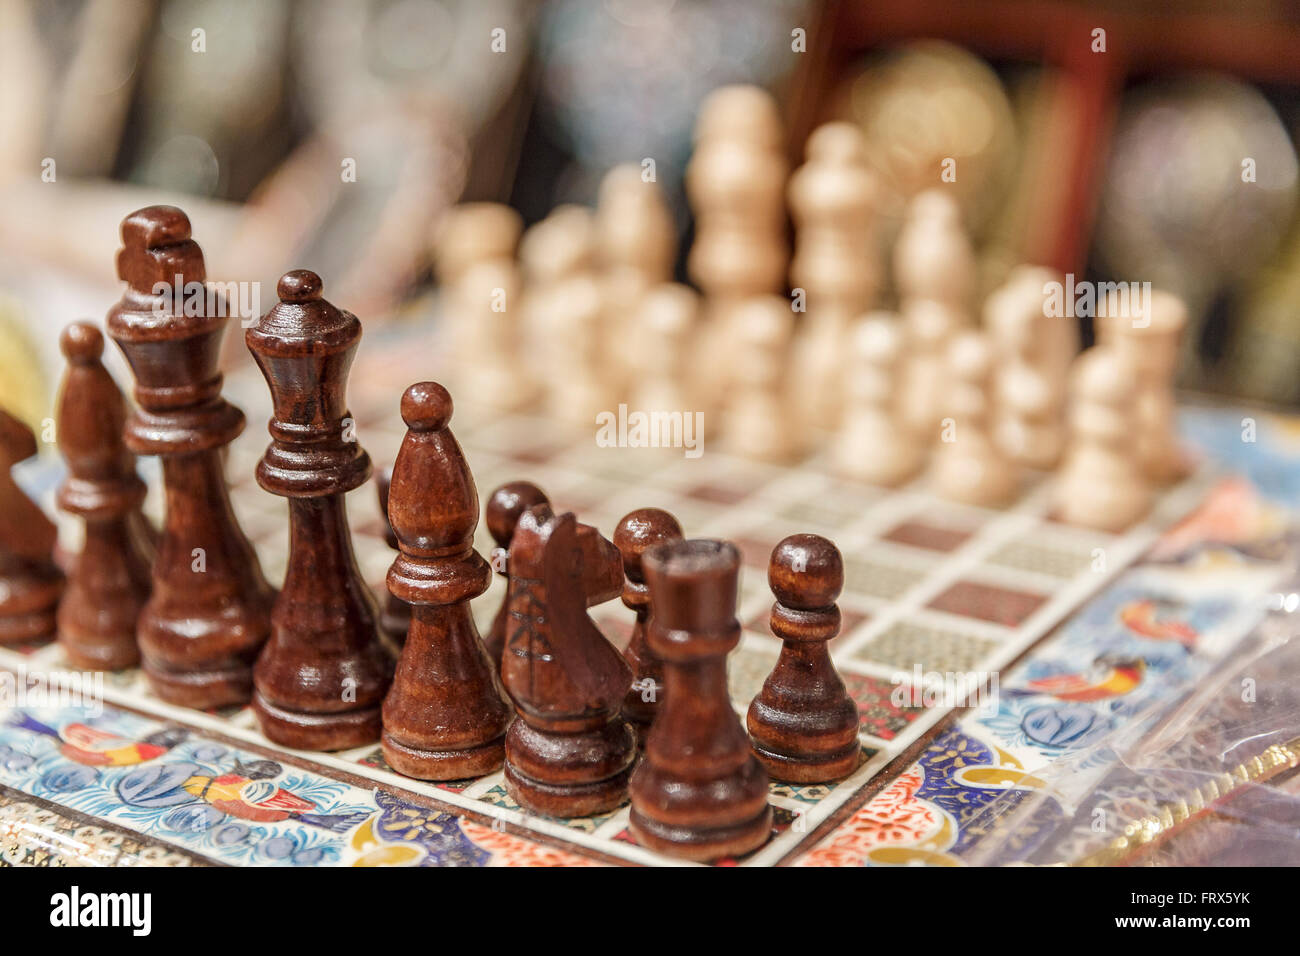 75 fotografias e imagens de Chess Sepia Tone - Getty Images